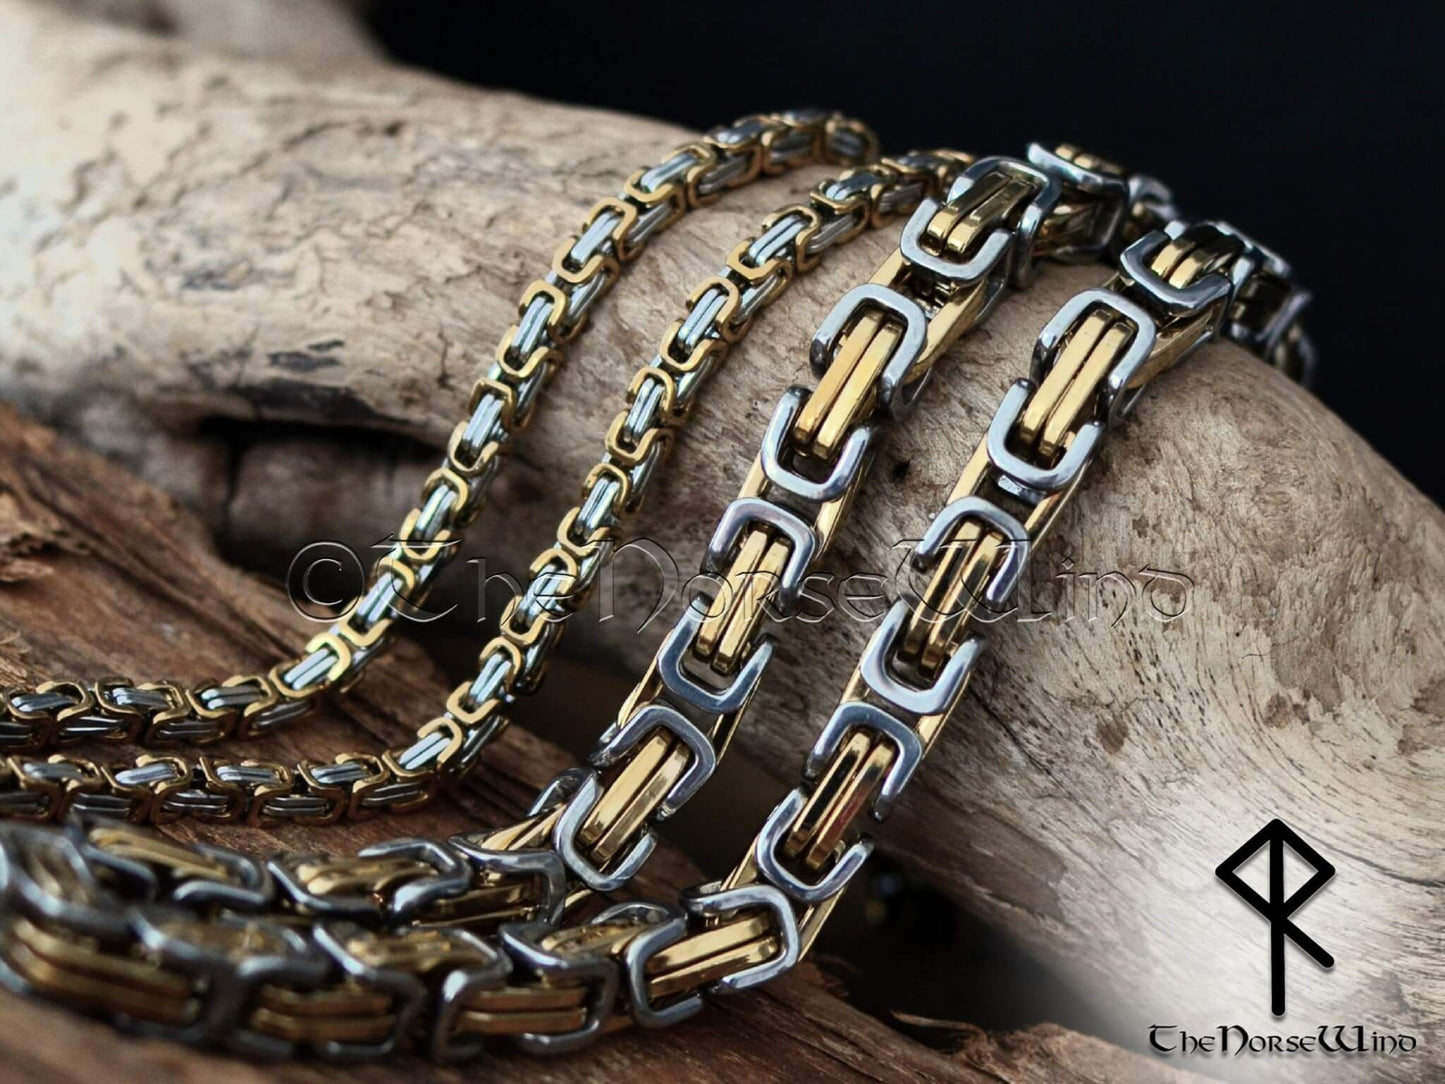 Bjorn Warrior Stainless Steel Necklace by NastyaMedun on DeviantArt